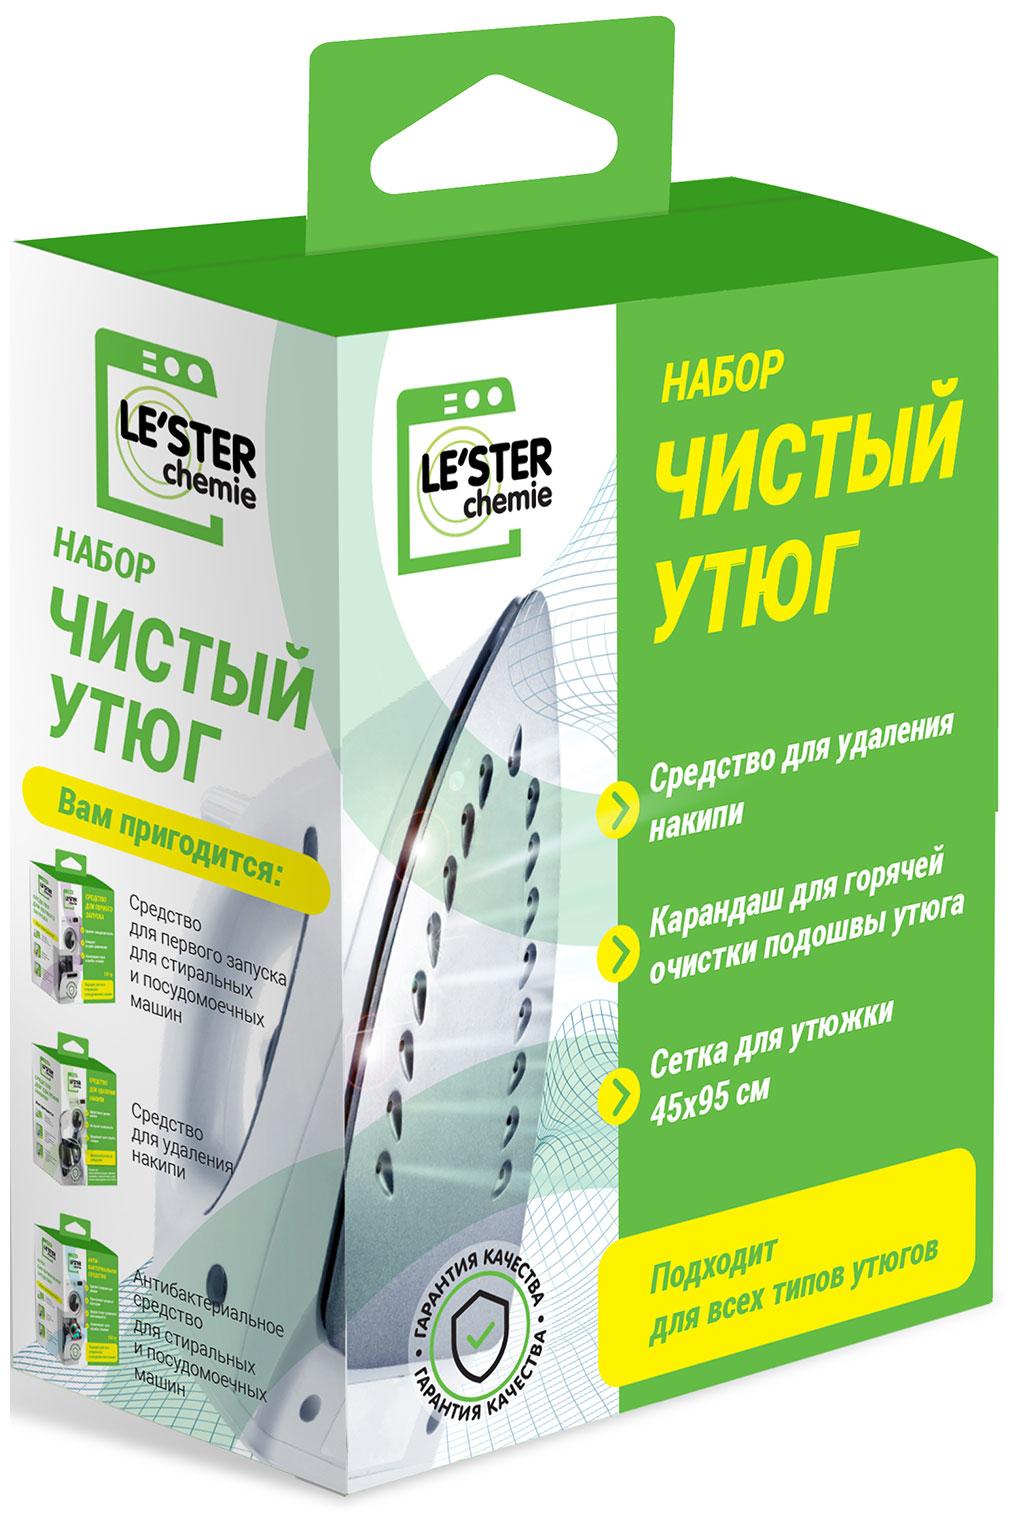 Набор LE'STER CH-i2- Чистый утюг цена и фото